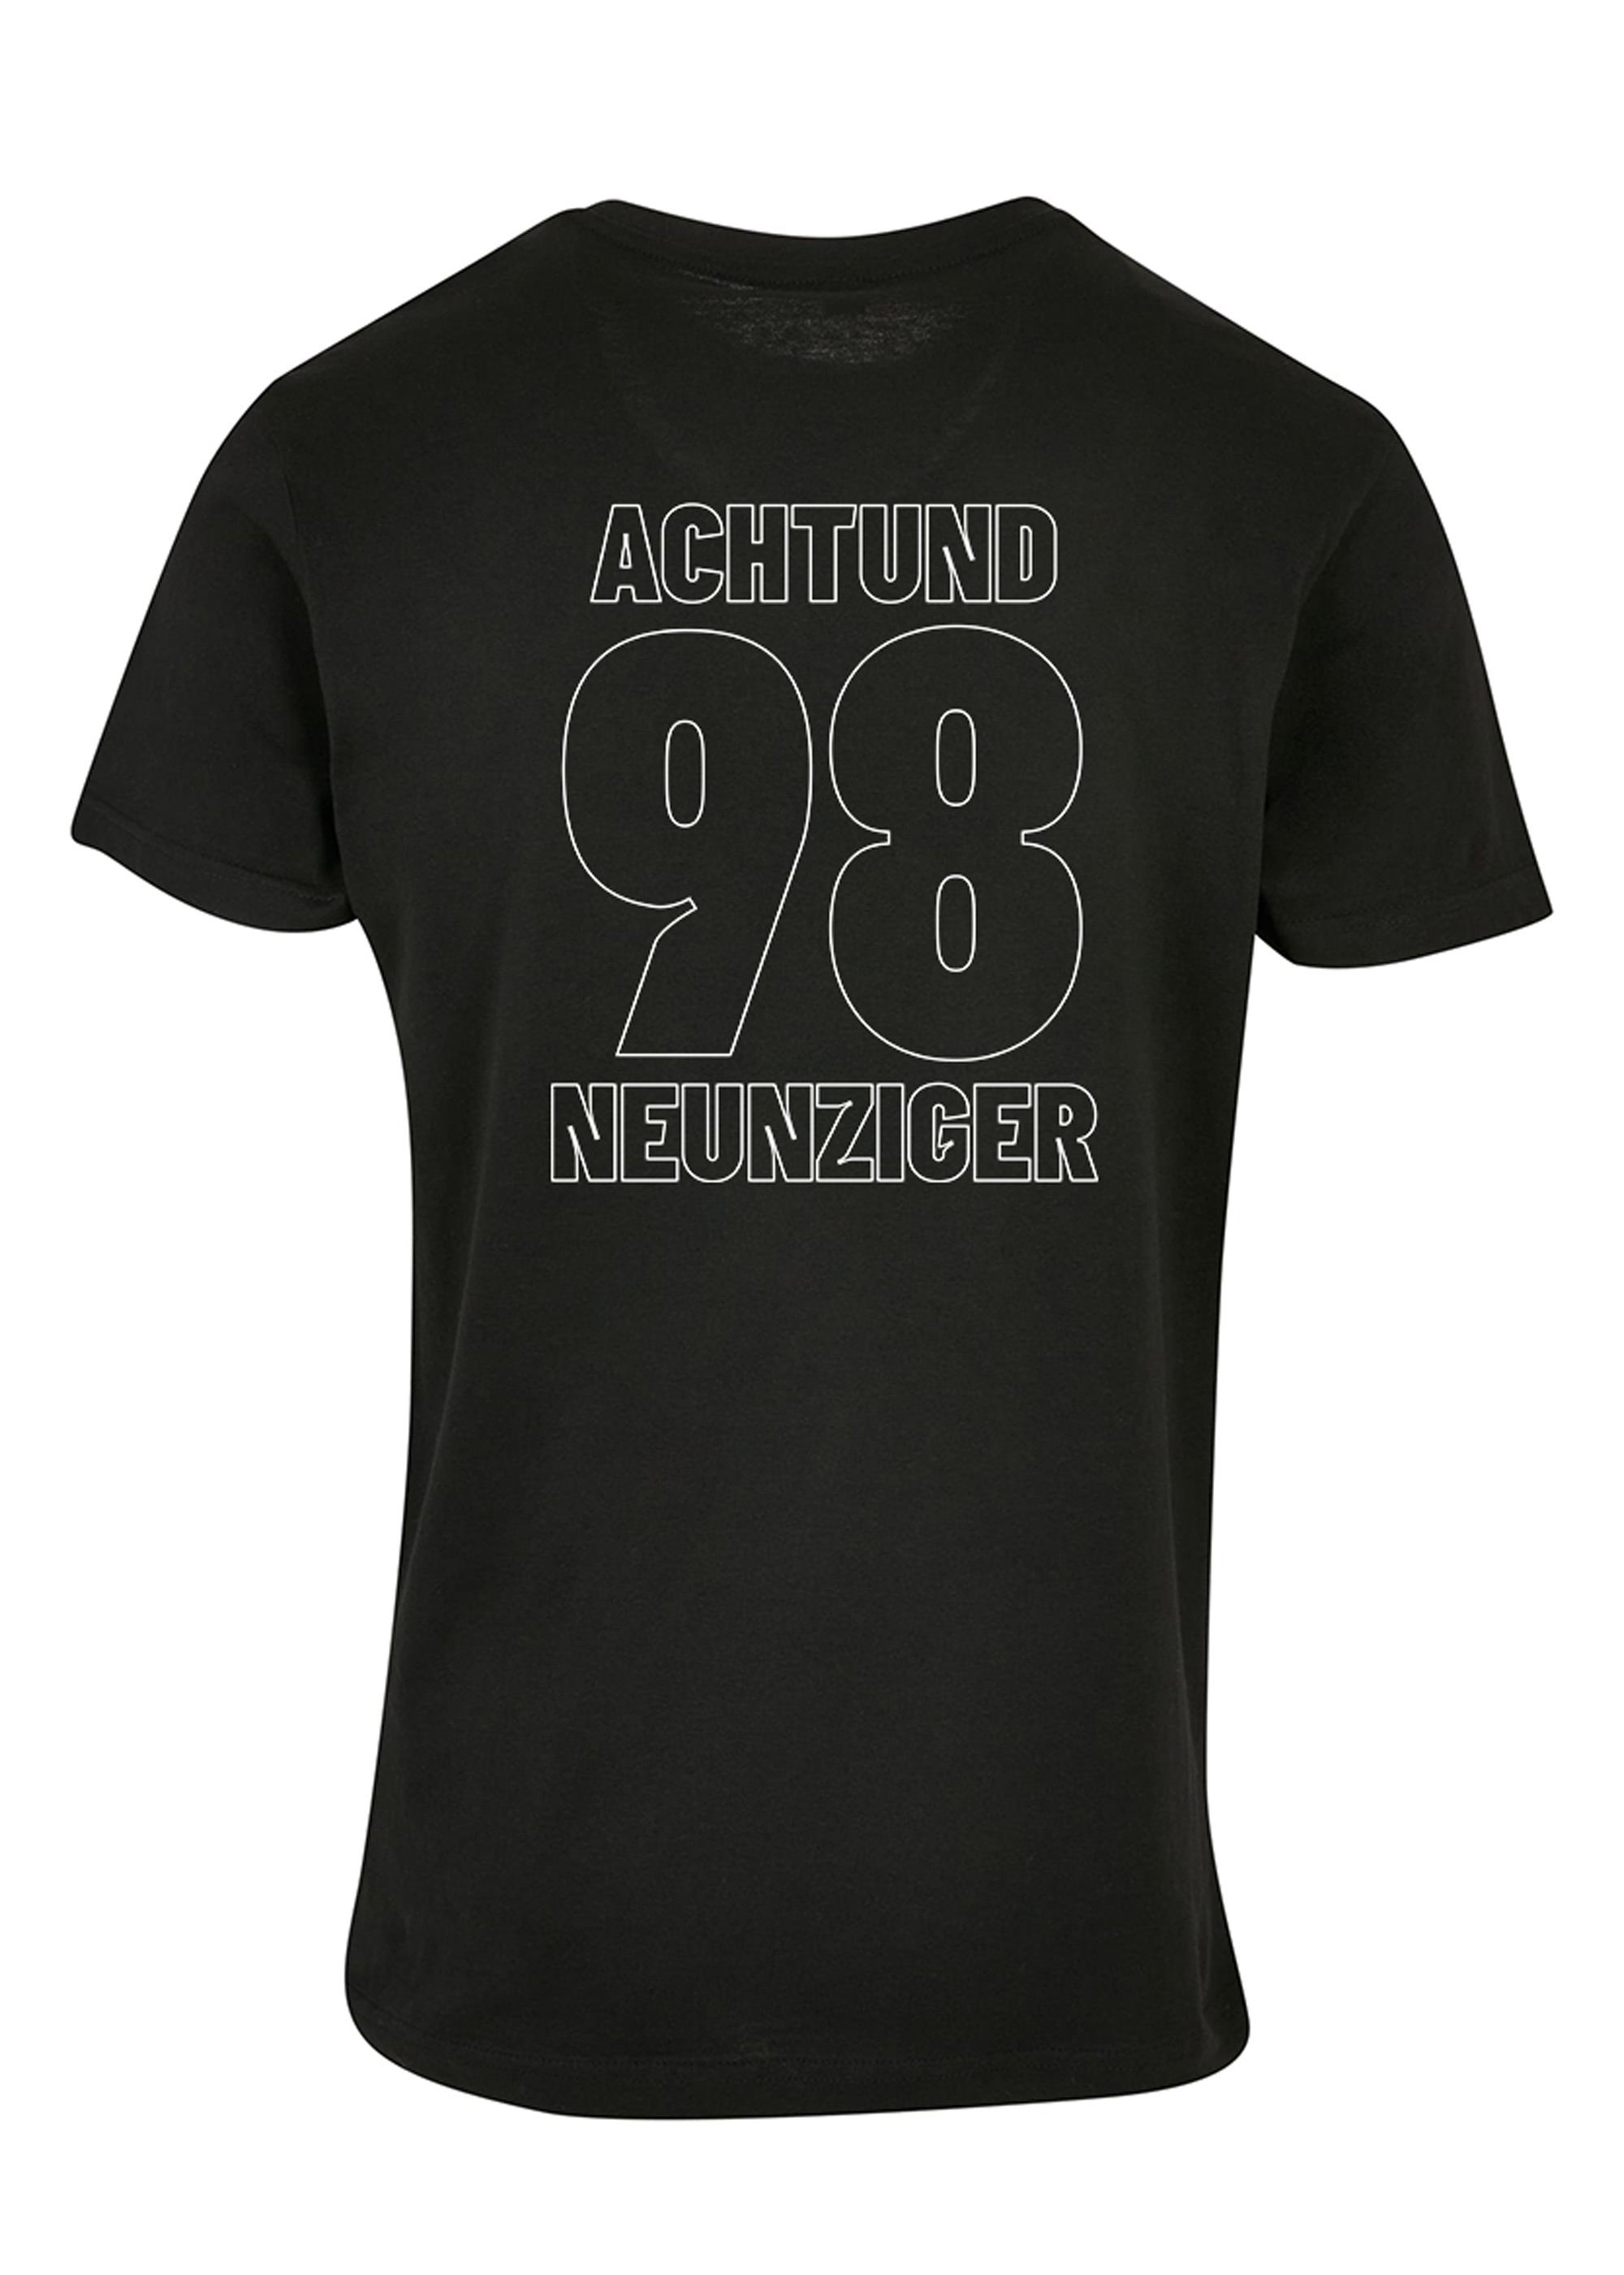 SV 98 POD-Shirt "Achtundneunziger", Doppelprint